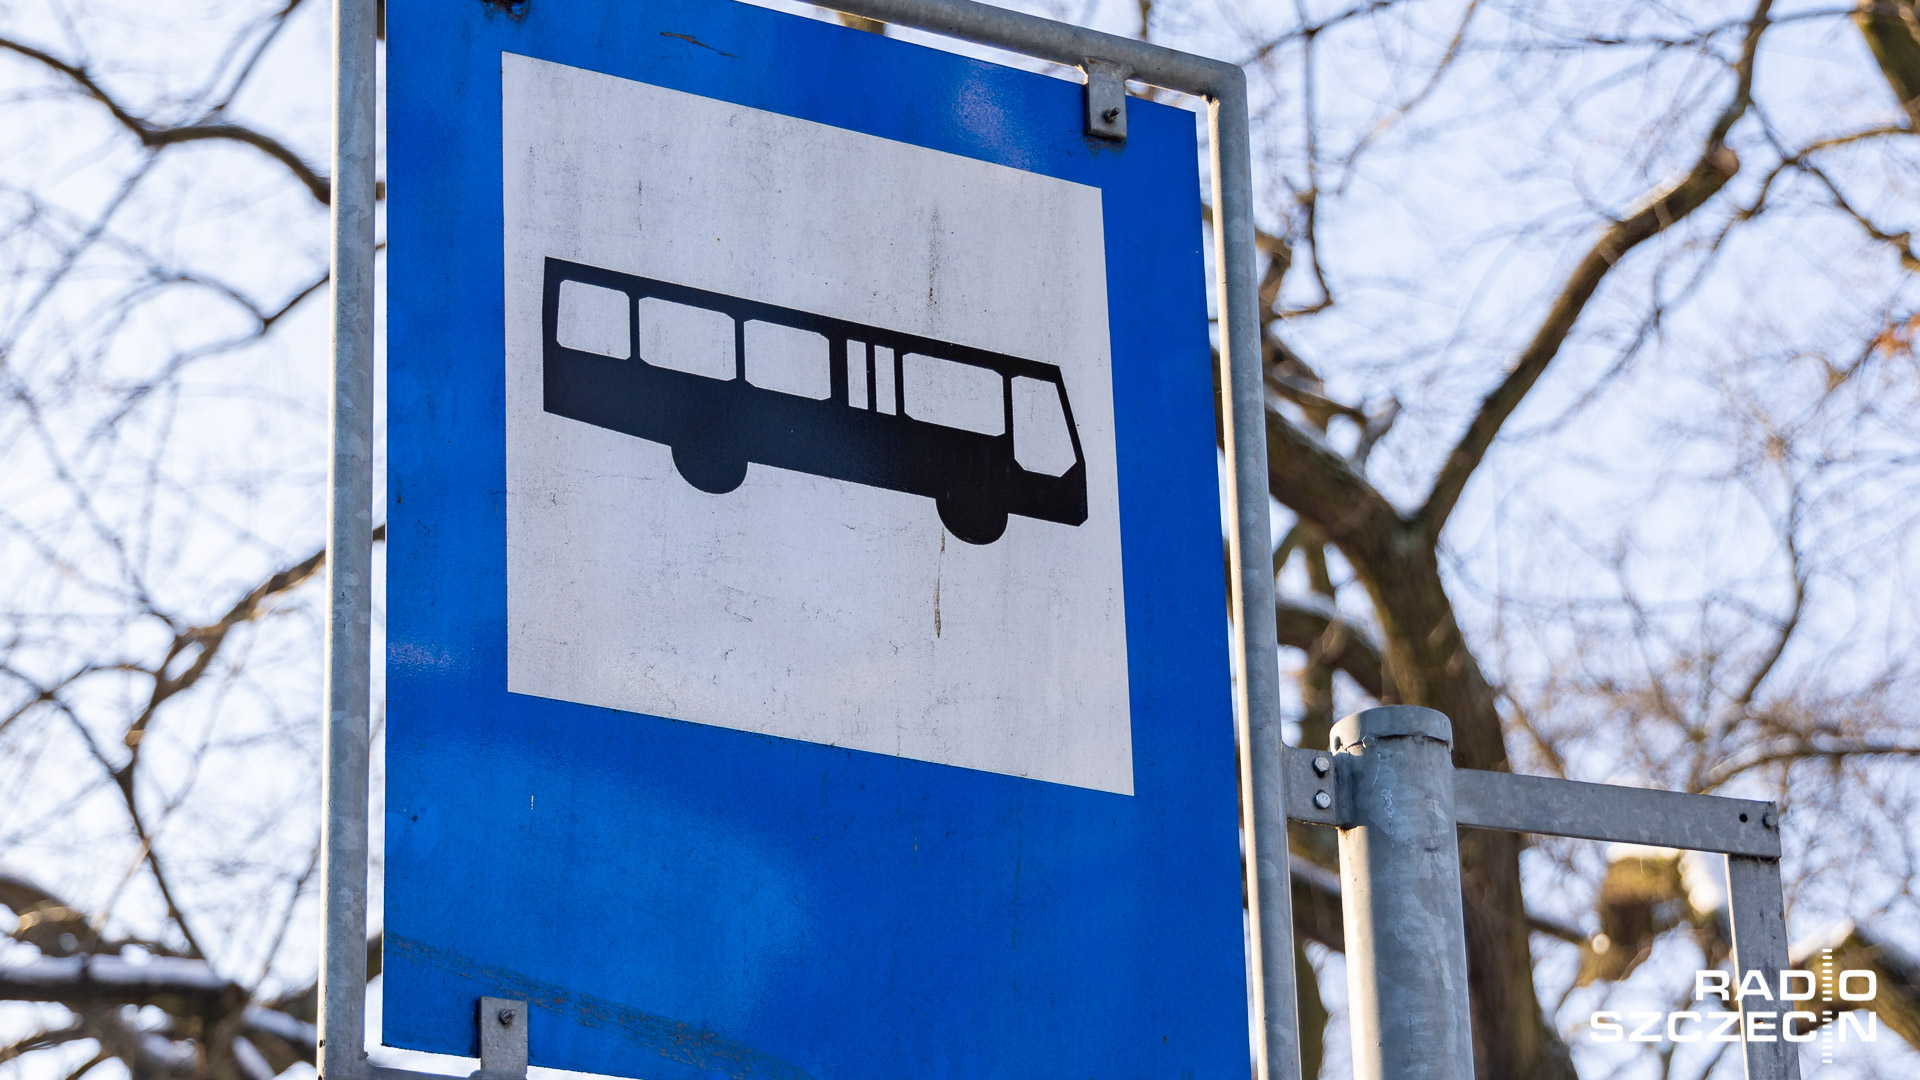 Bezpłatna przejażdżka miejskim autobusem również w Stargardzie. To w ramach Europejskiego Dnia bez Samochodu.